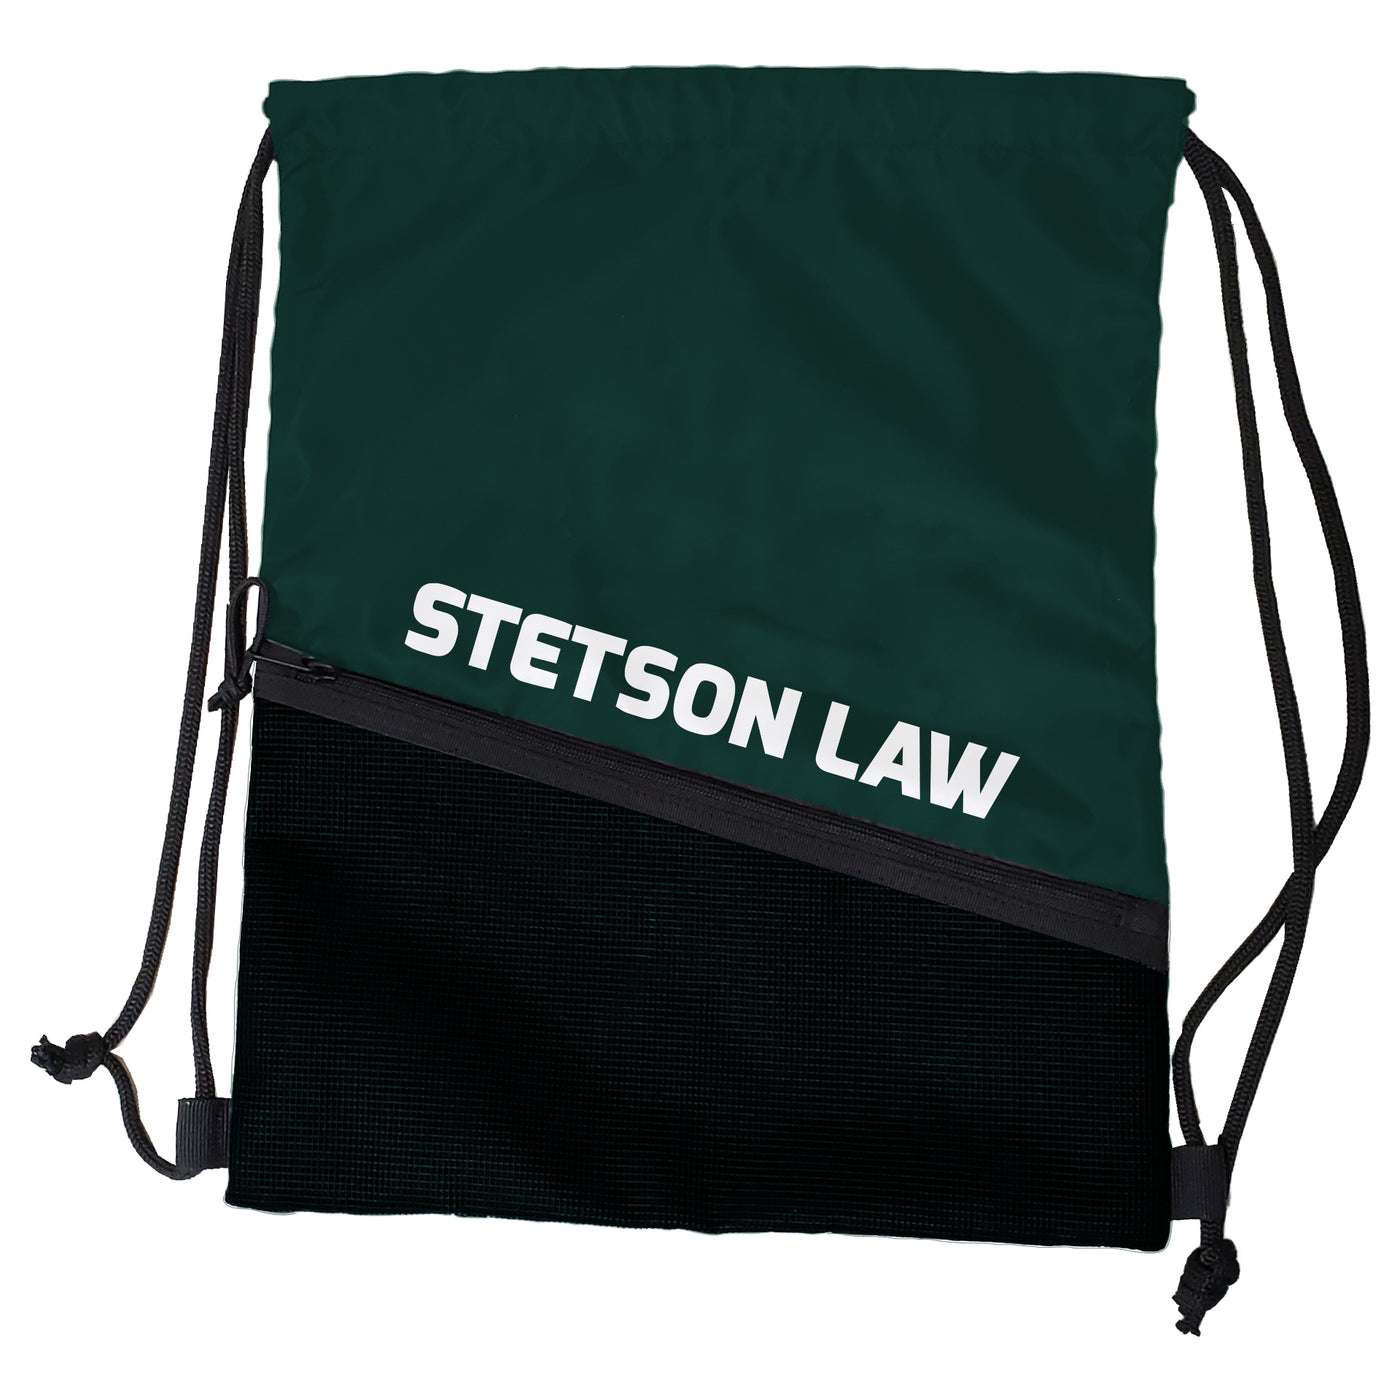 Stetson Law Tilt Backsack